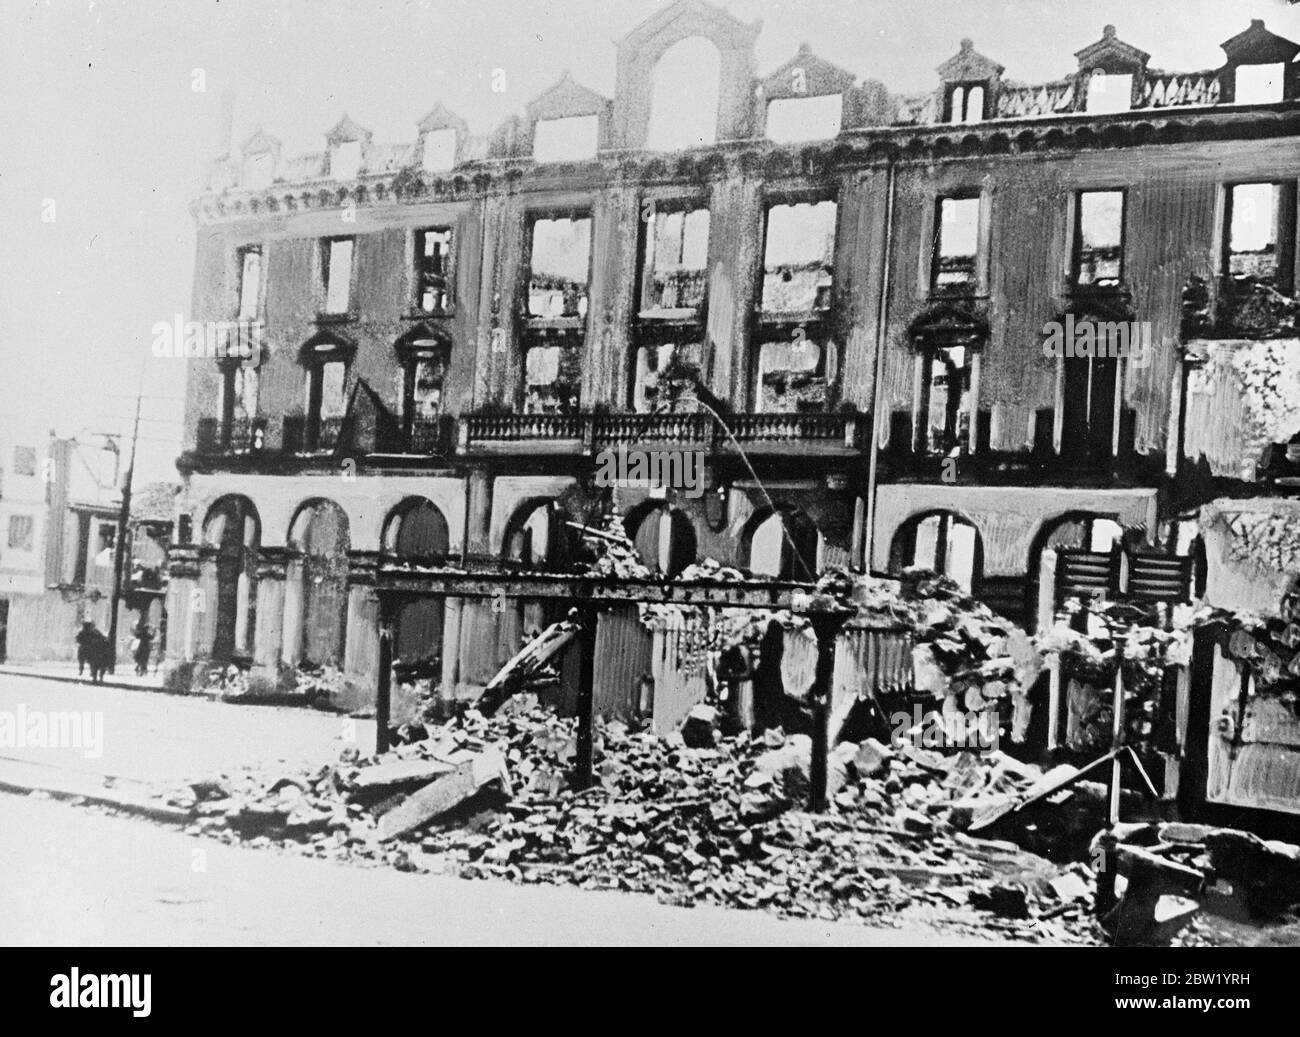 La ville de Mungia, à quelques kilomètres seulement de Bilbao, est en ruines après les bombardements intenses d'air et d'artillerie qui ont été utilisés par les rebelles dans leur rapide avance vers Bilbao, pays basque. 18 juin 1937 Banque D'Images